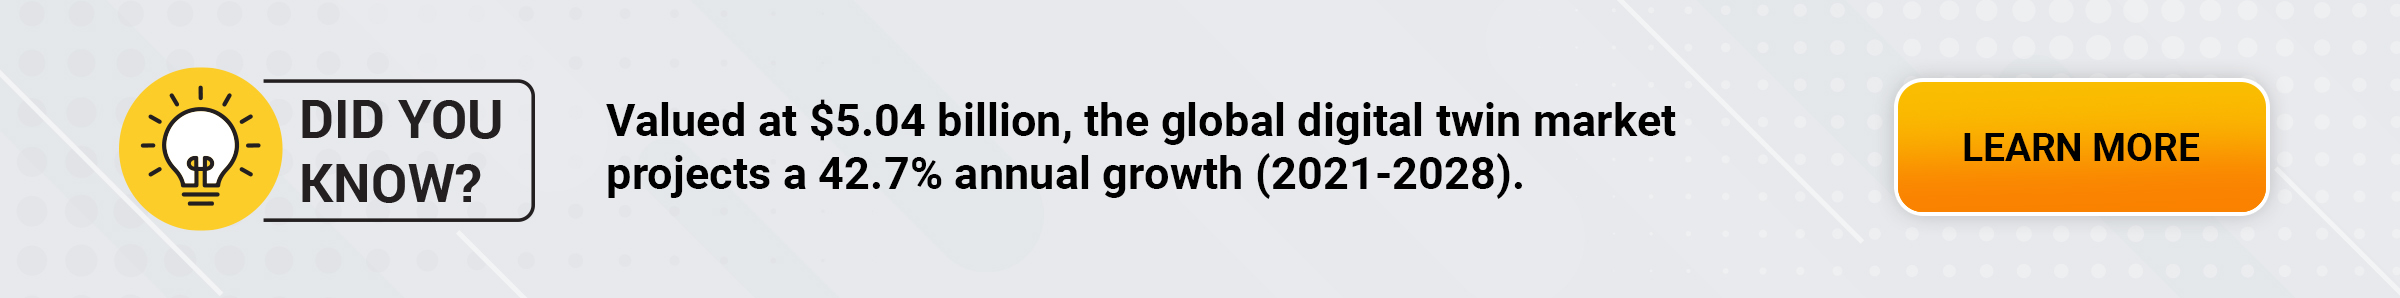 Valorado en 5.040 millones de dólares, el mercado mundial de gemelos digitales proyecta un crecimiento anual del 42,7% (2021-2028).